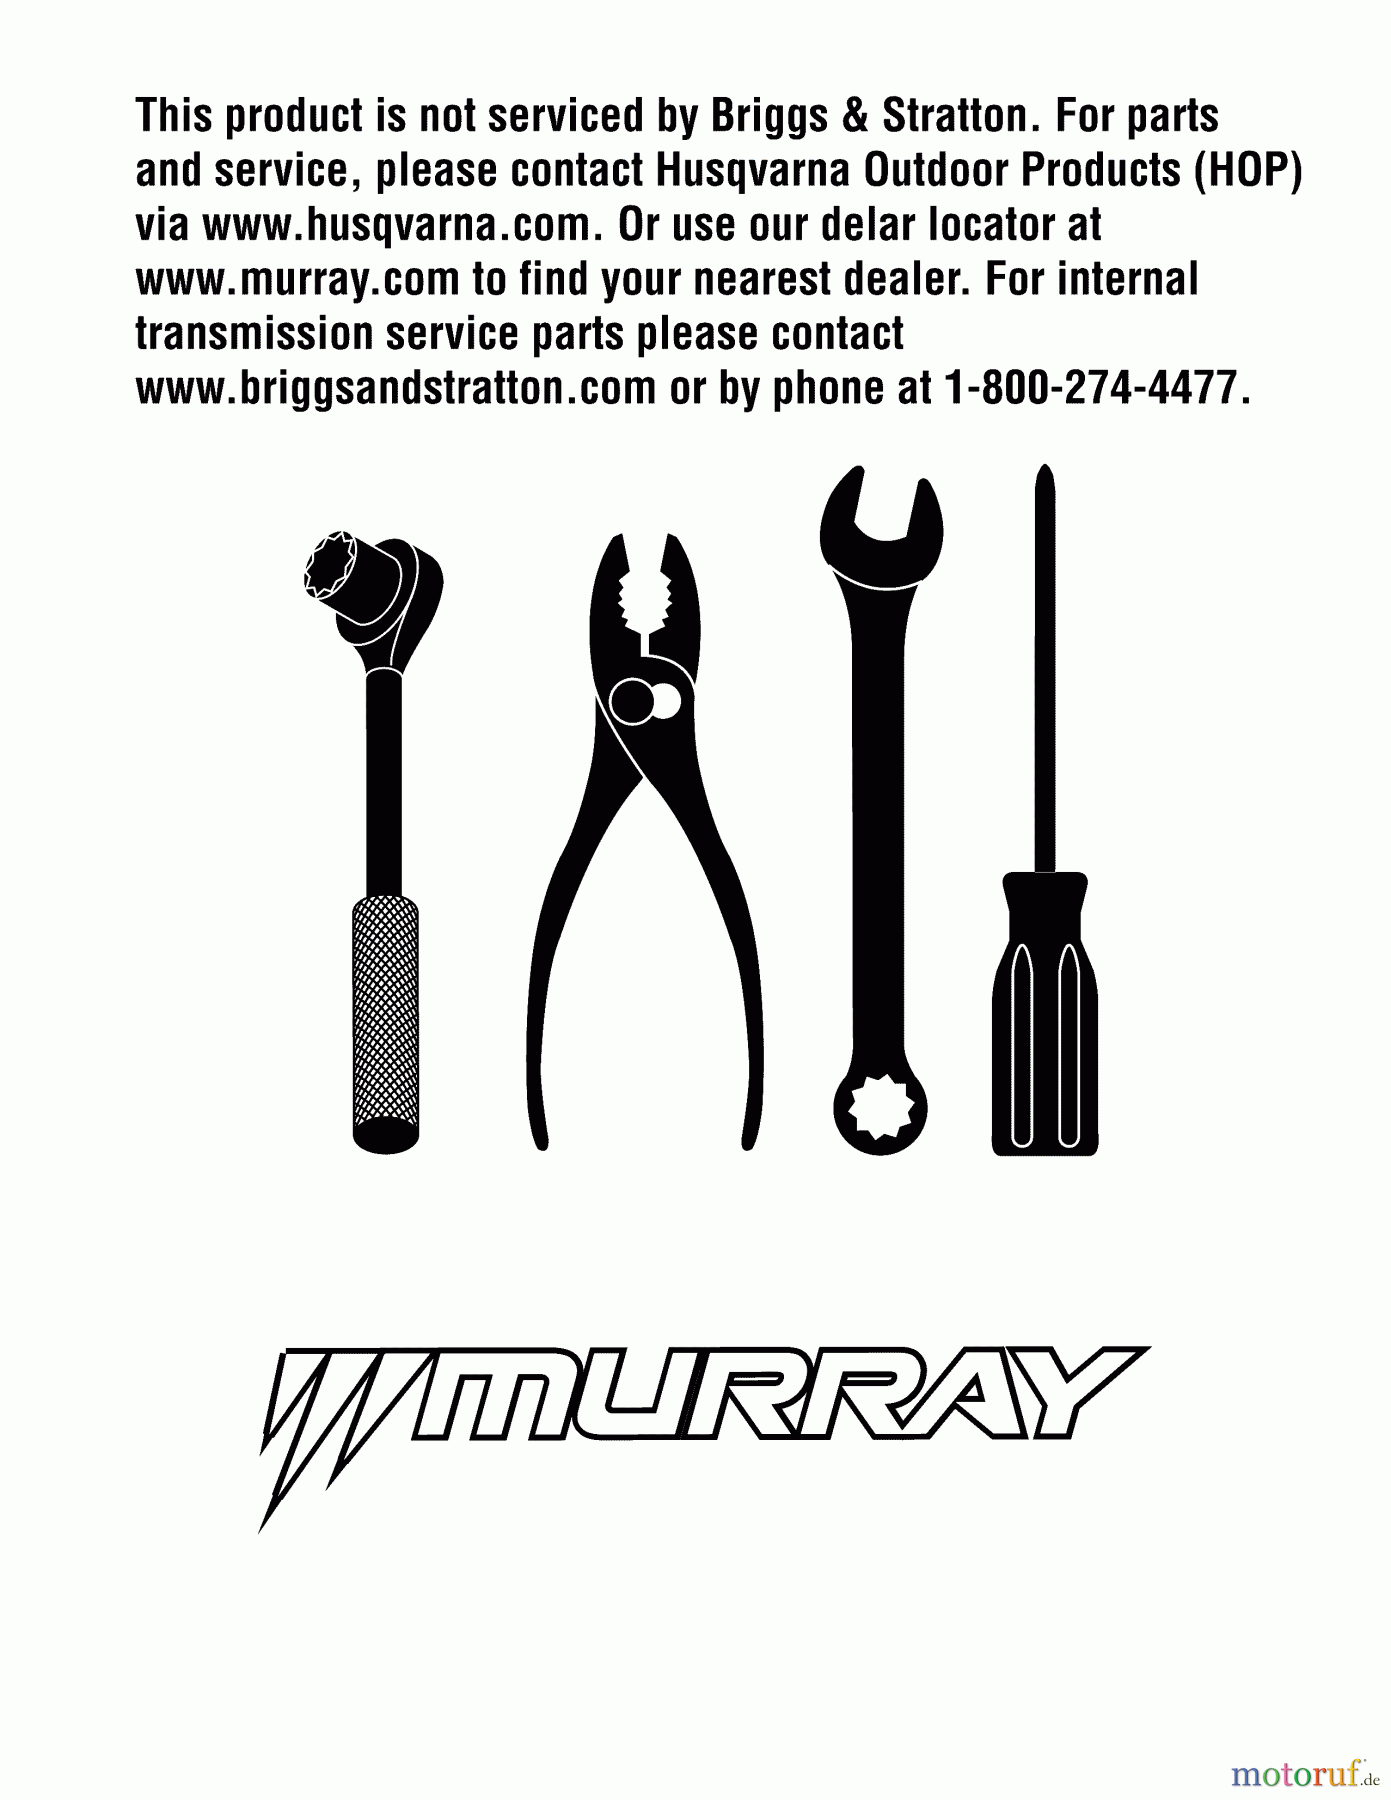  Murray Rasenmäher M22450 (96114002500) - Murray 22